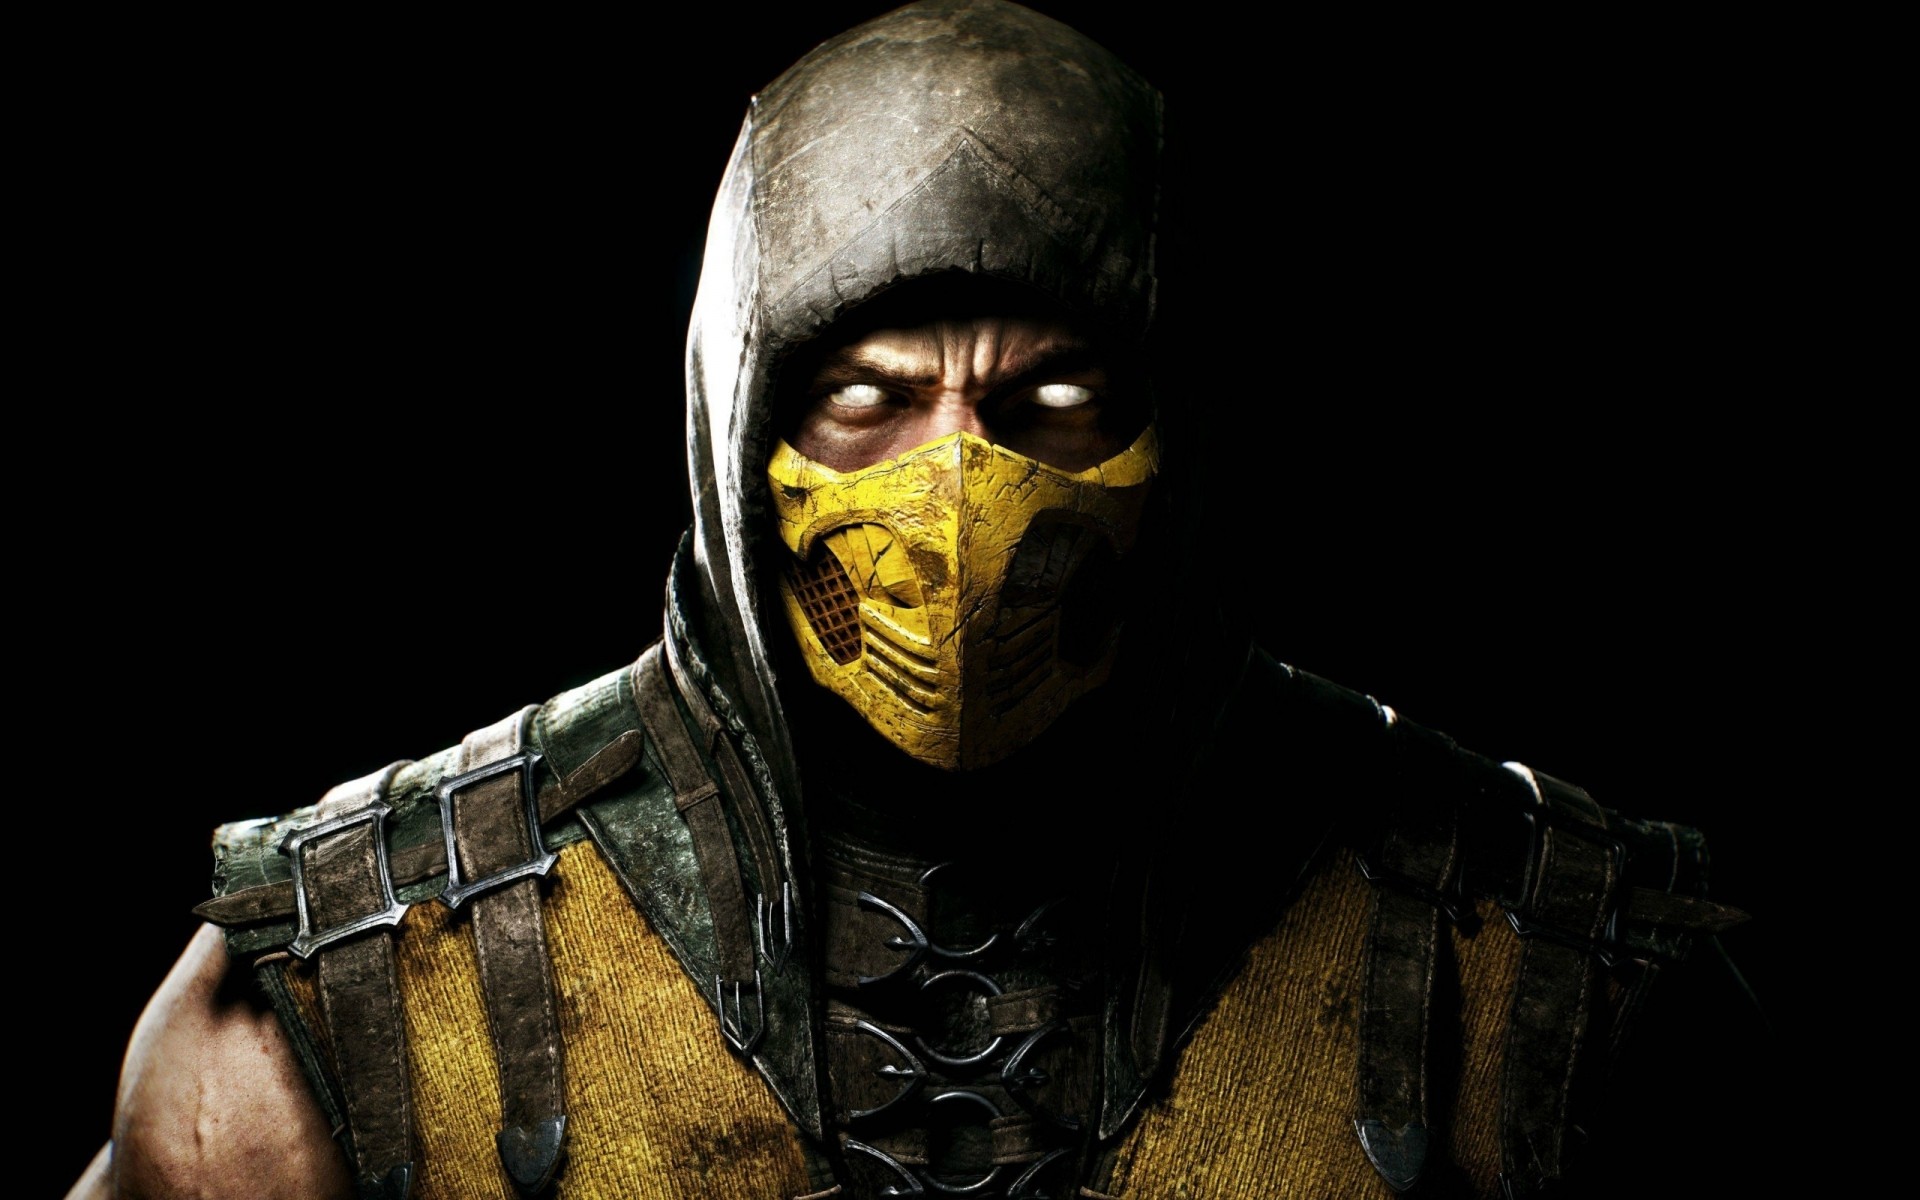 other games войны маска человек портрет один шлем оружие воин взрослый темный ужас военные опасность лицо страх мортал комбат желтый скорпион